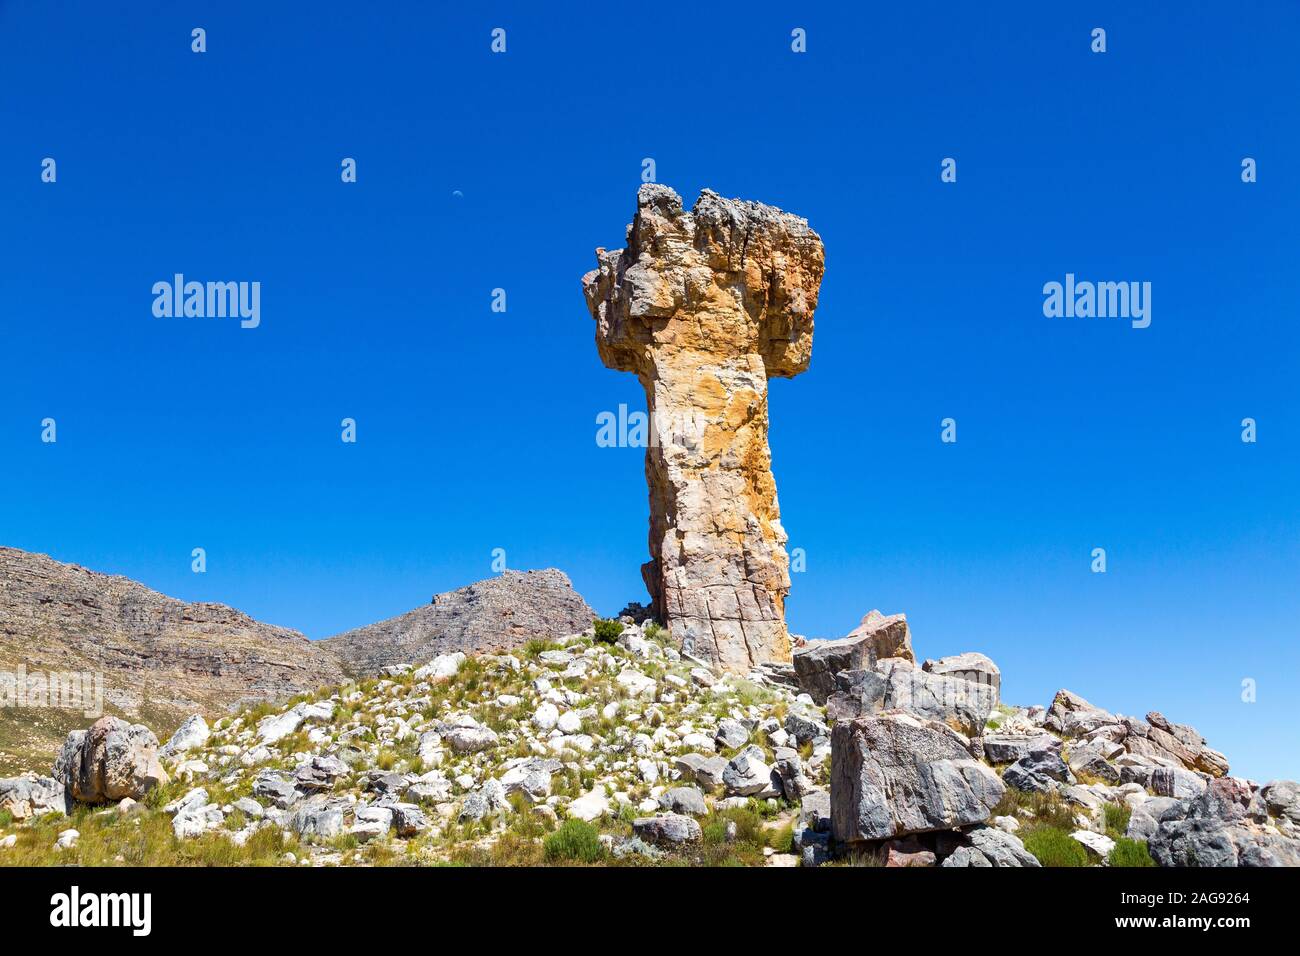 La formation rocheuse de la croix de Malte - une destination de randonnée populaire dans le Cederberg, Afrique du Sud Banque D'Images